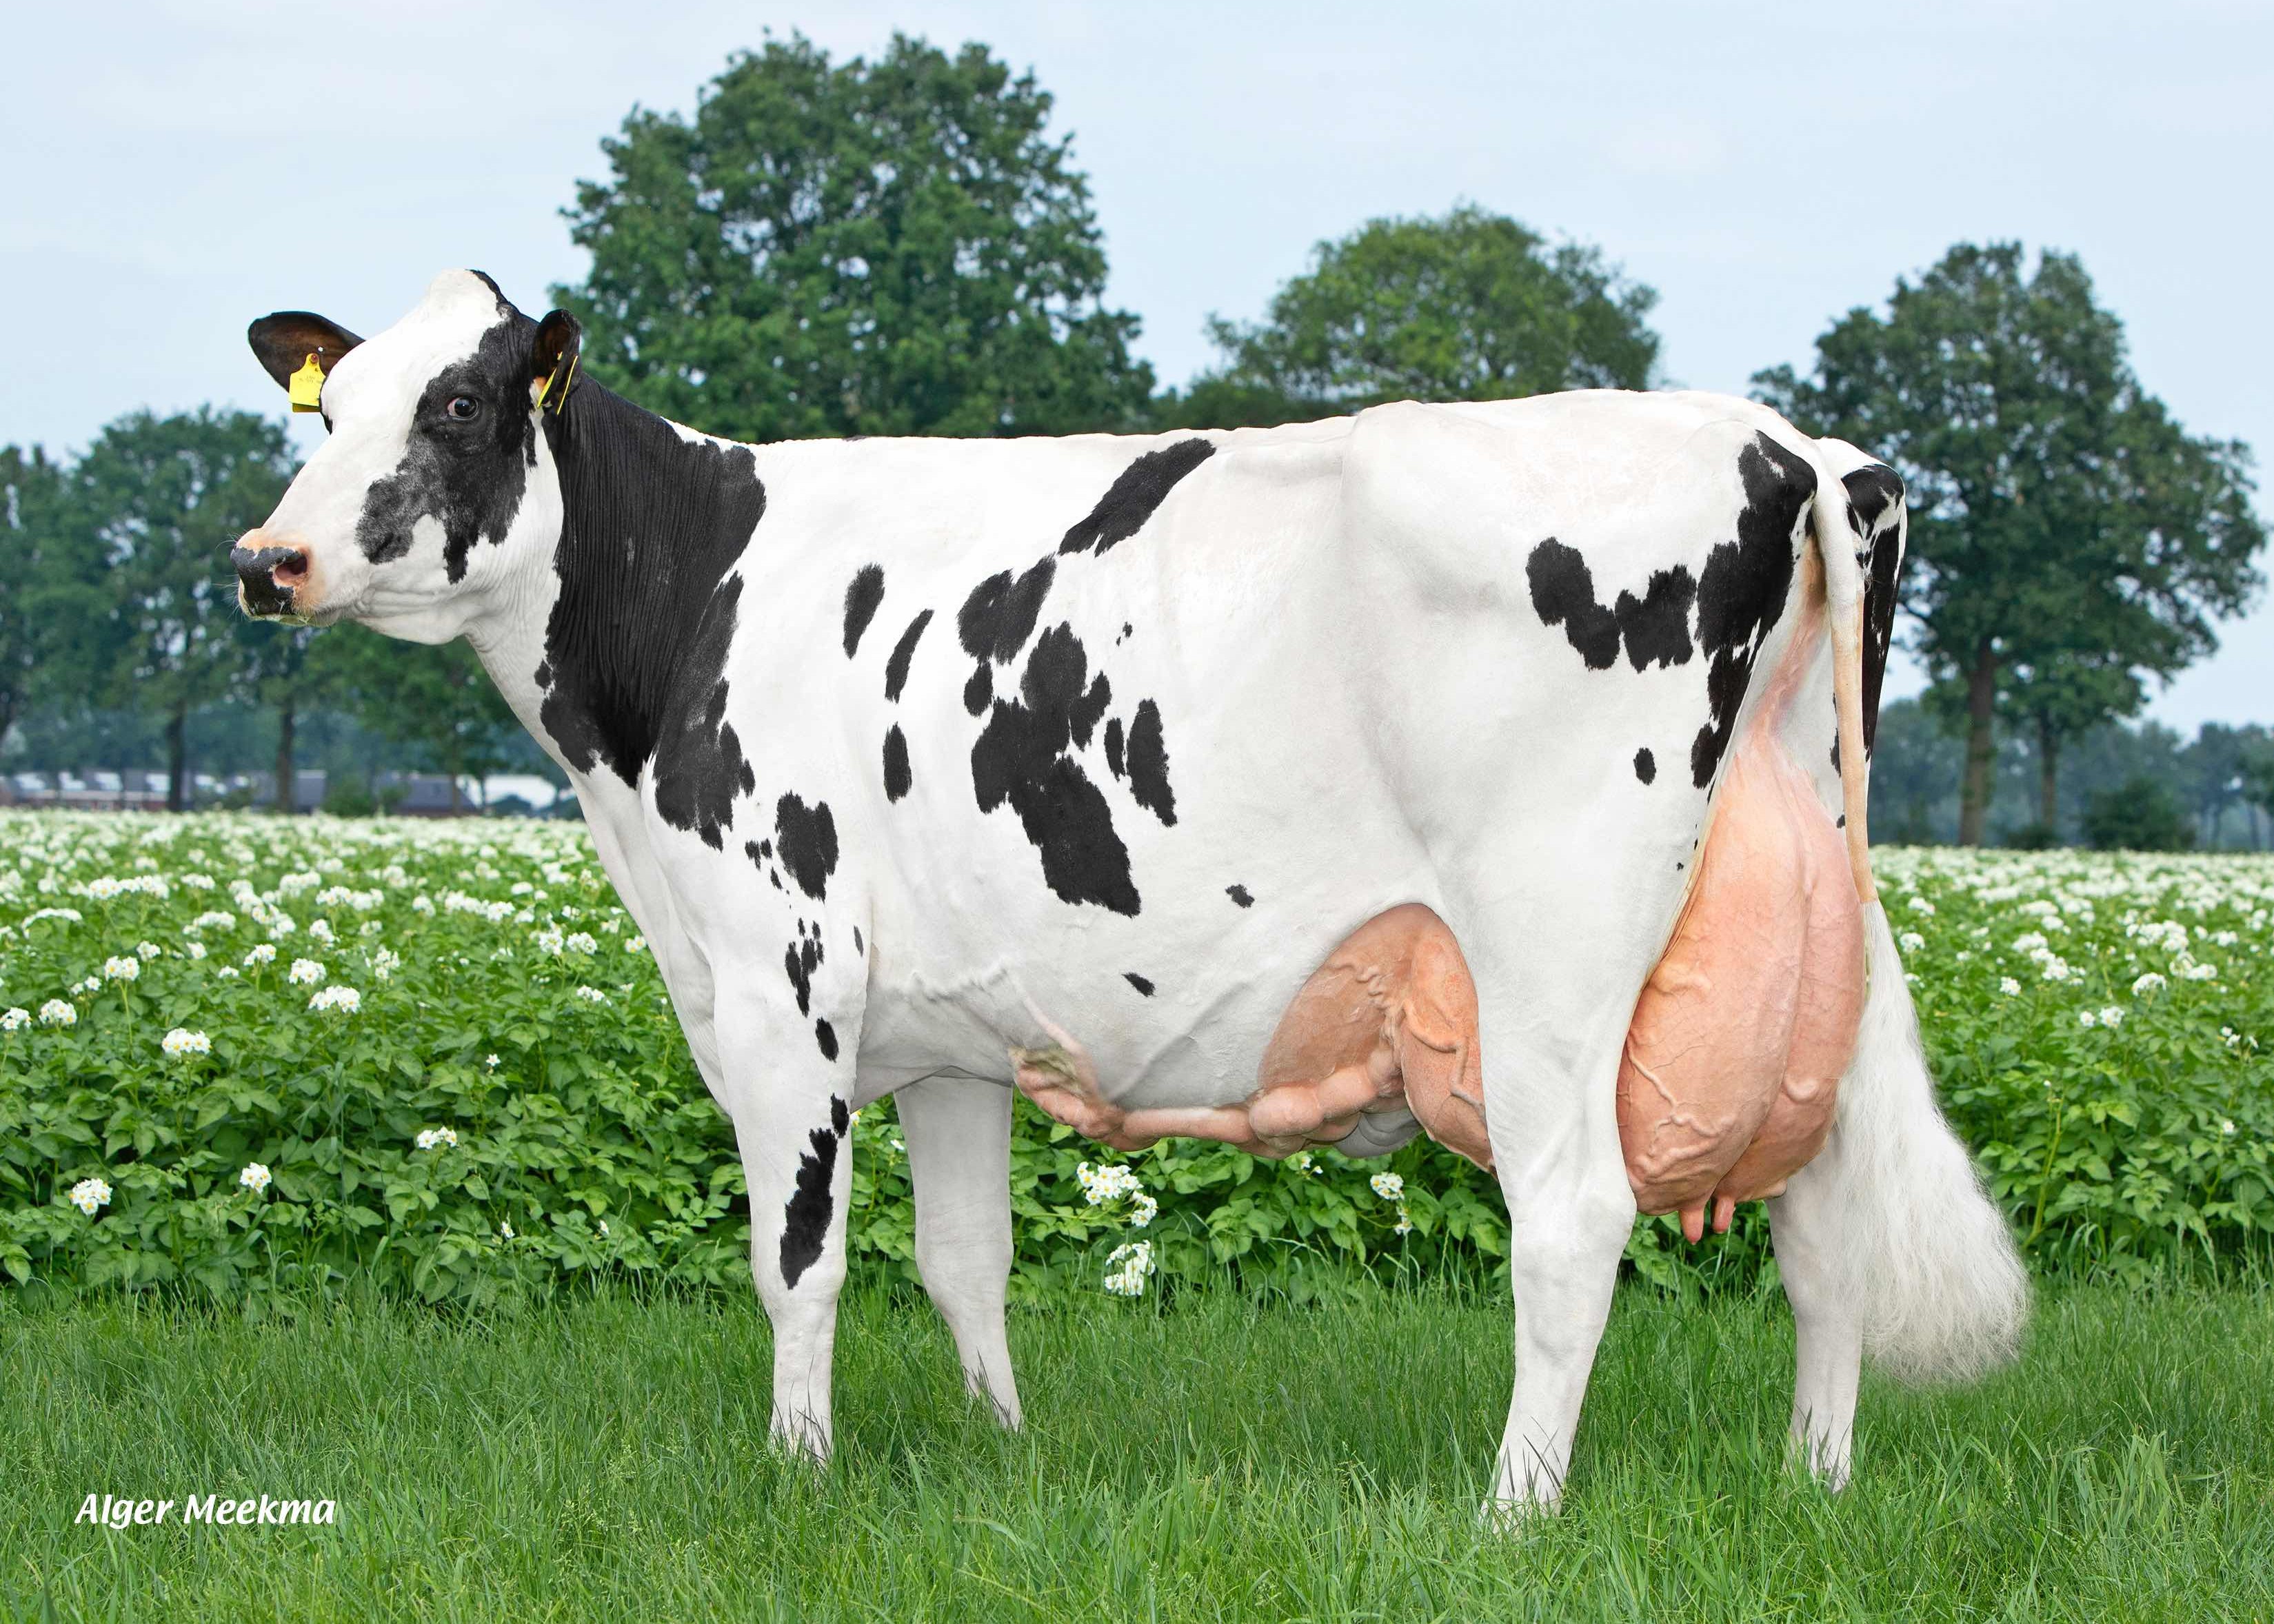 Peeldijker Liesje (3e dam of Liberate) owner: Priems VOF, De Mortel 100.000 kg milk